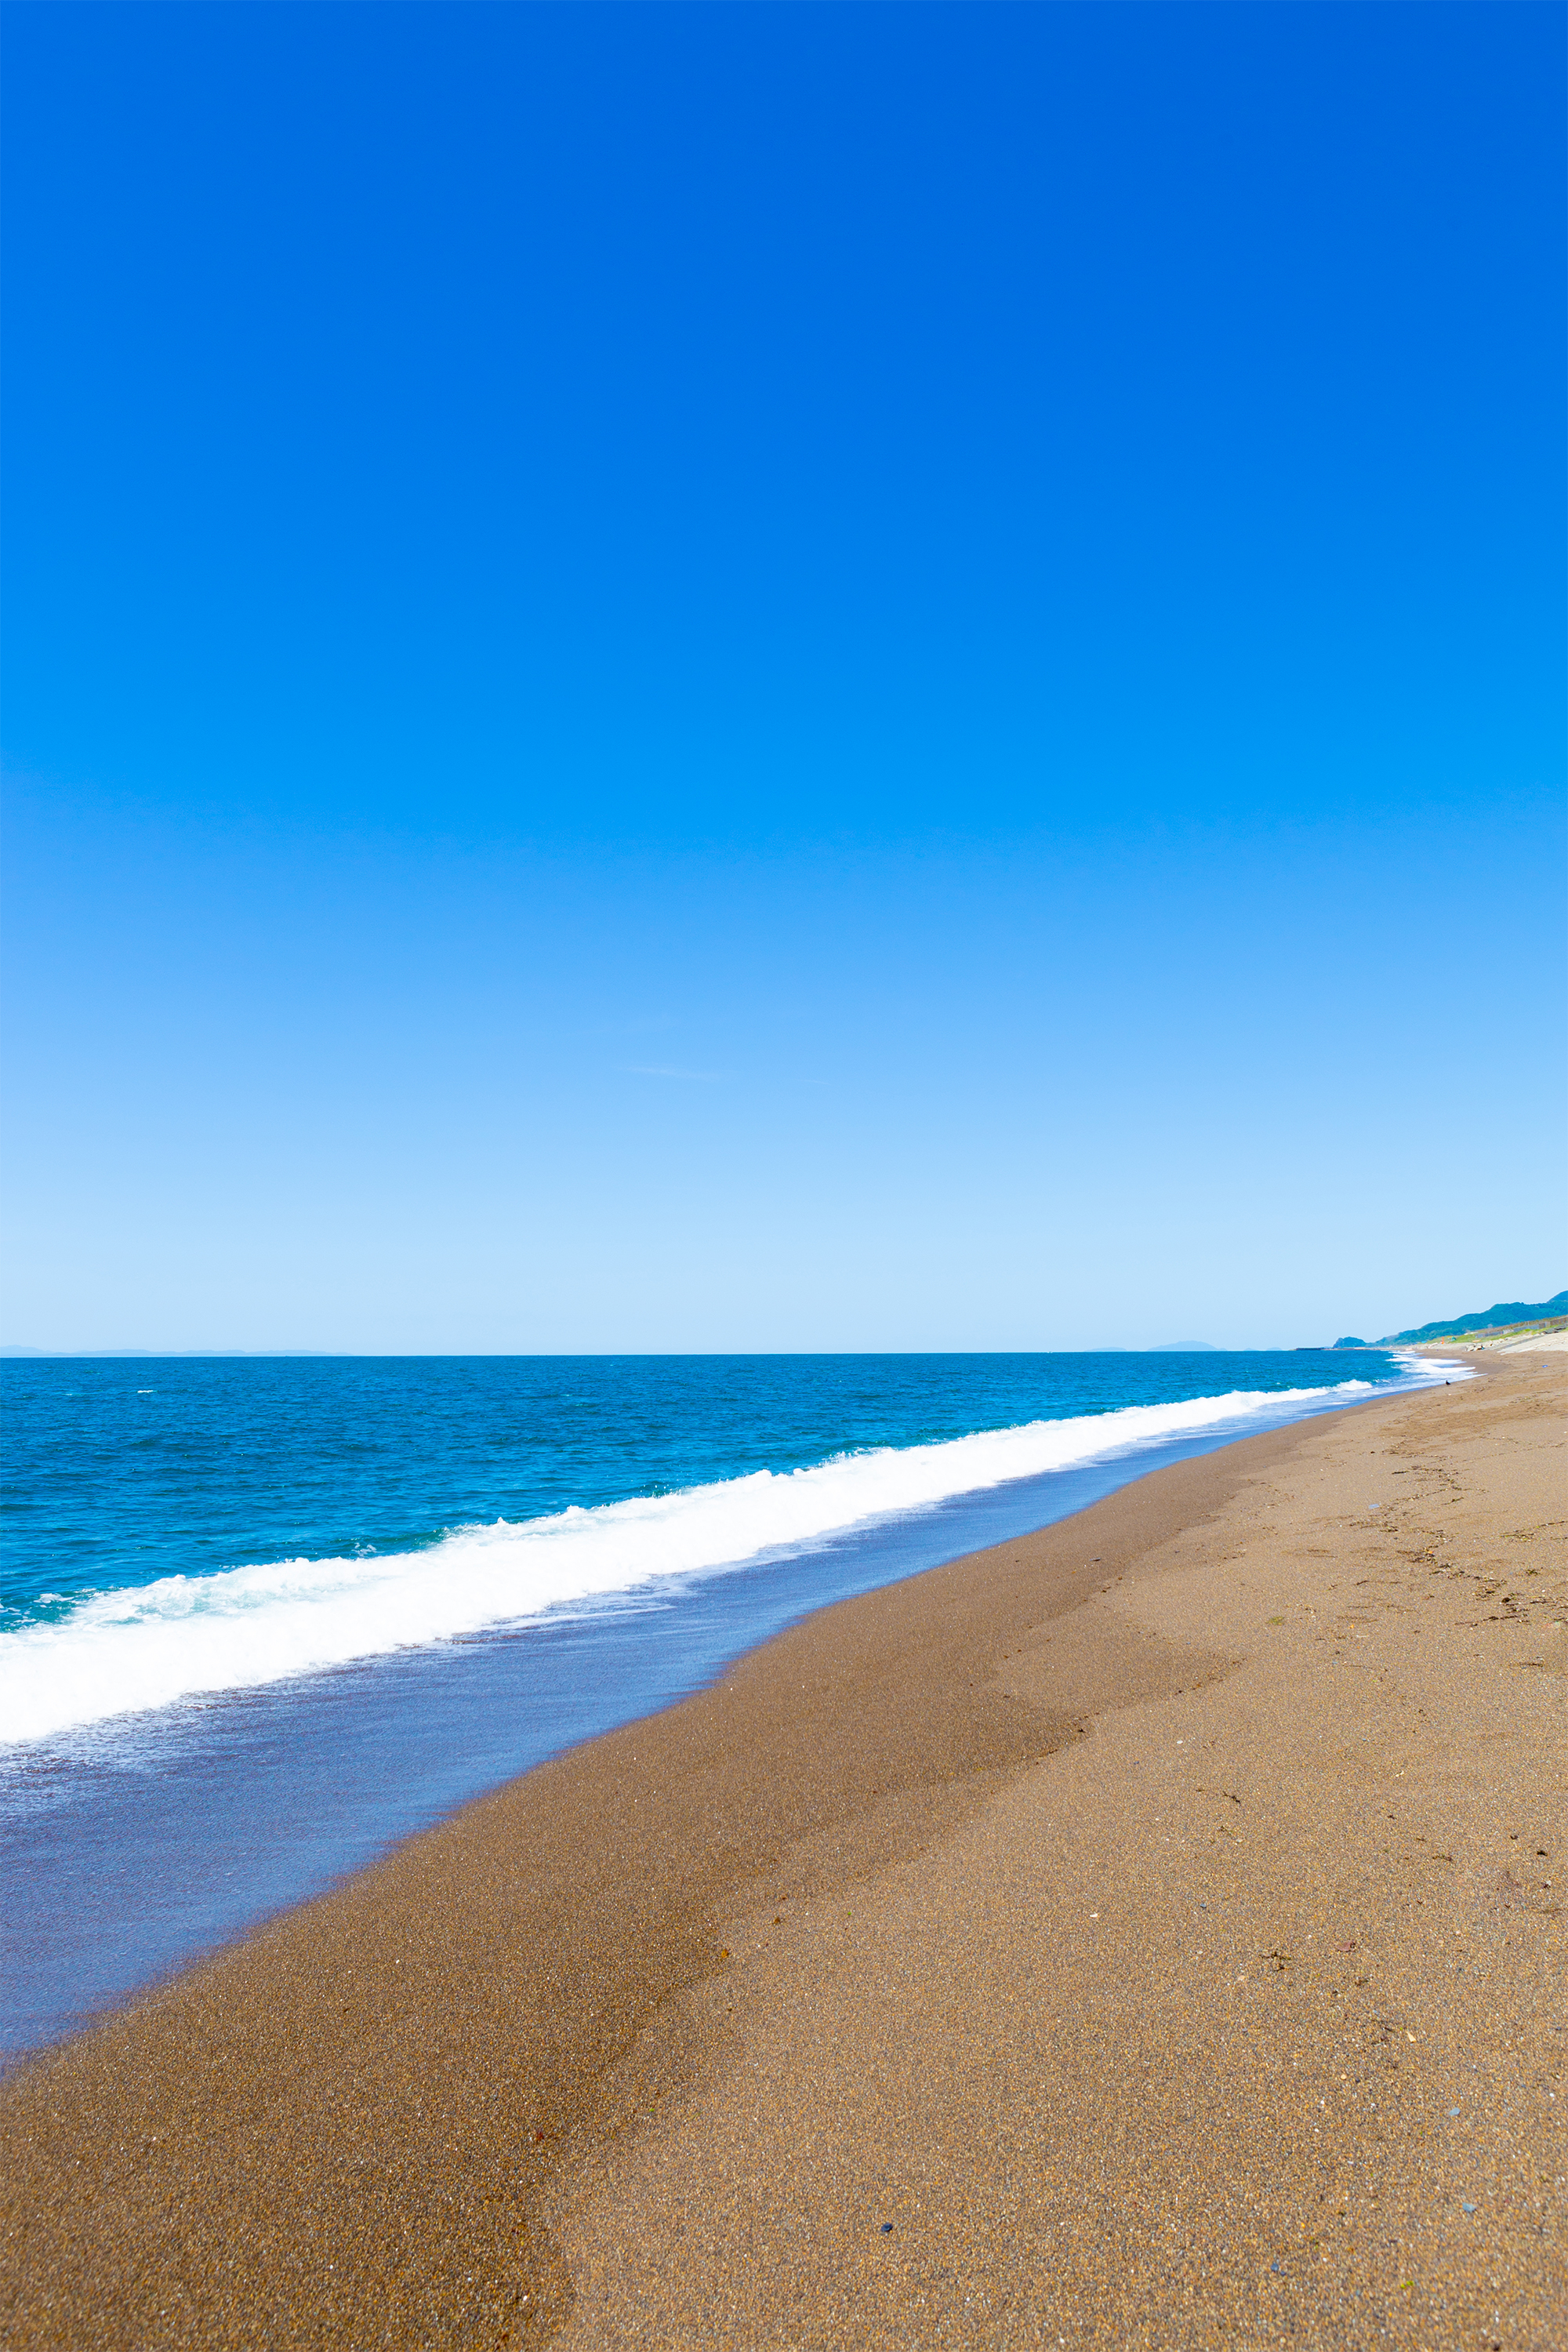 海 日本海 と砂浜02 無料の高画質フリー写真素材 イメージズラボ